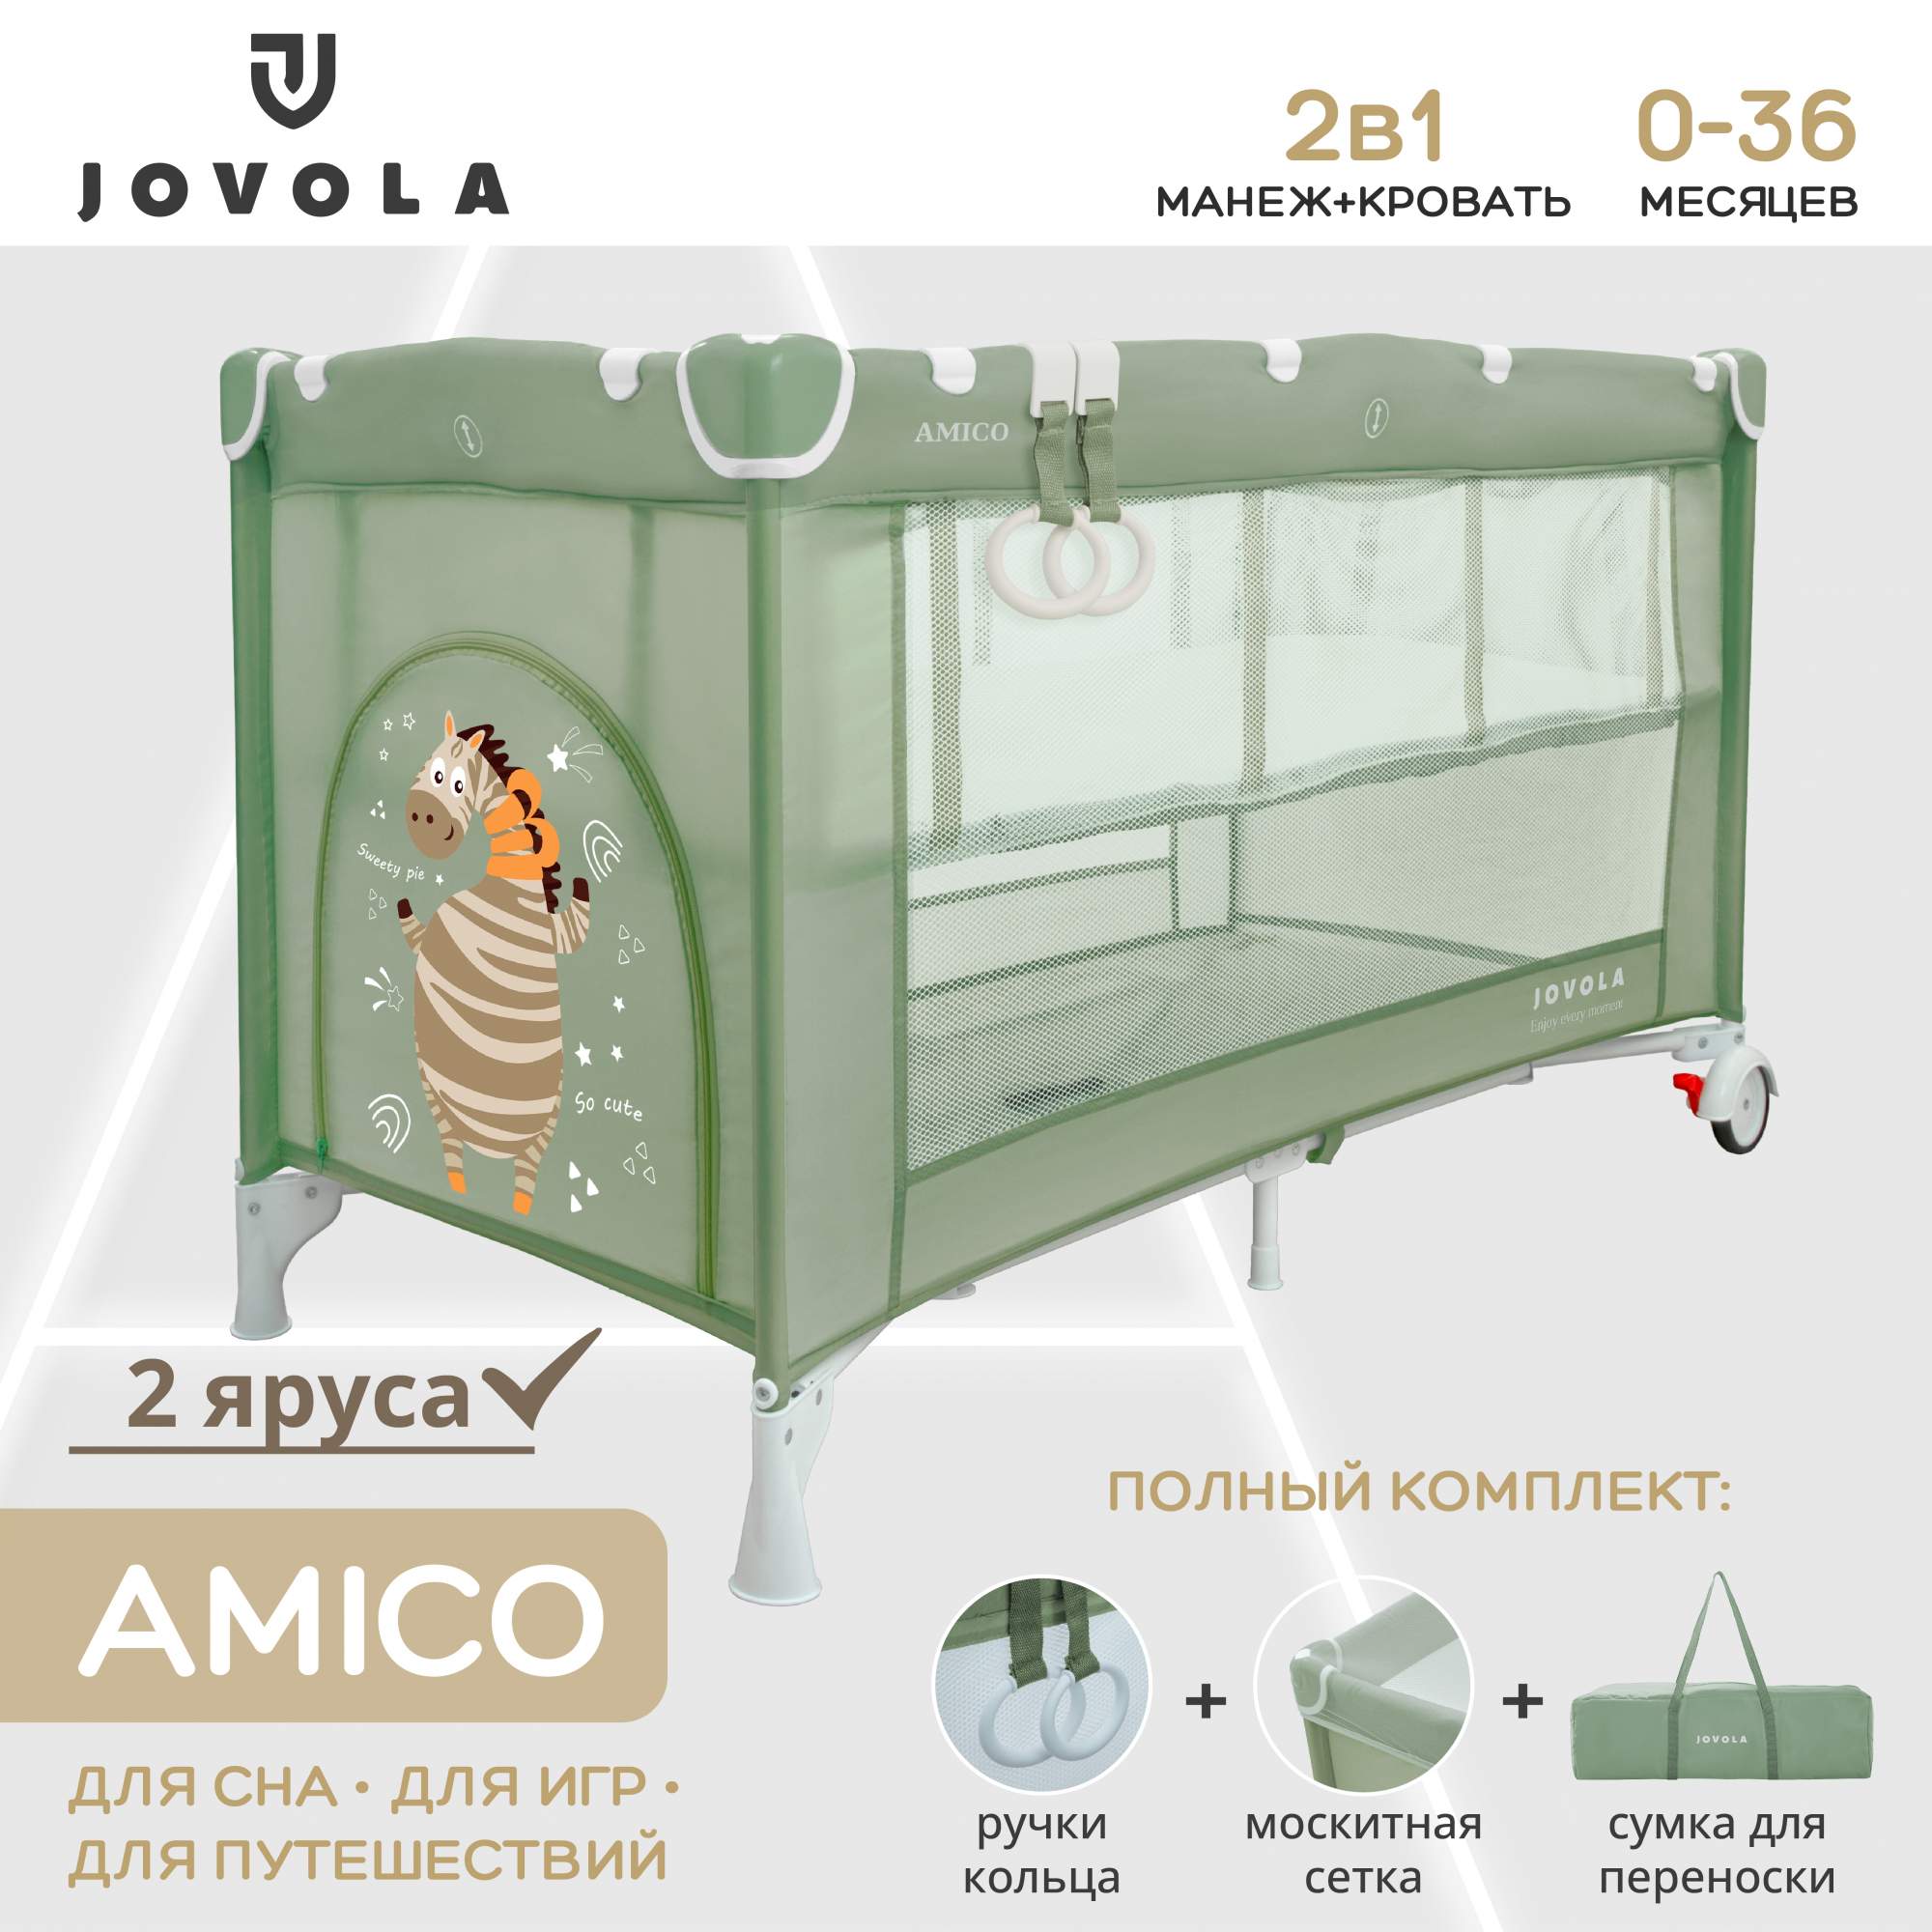 Манеж кровать детский JOVOLA AMICO для новорожденных складной 2 уровня зеленый манеж детский игровой solmax